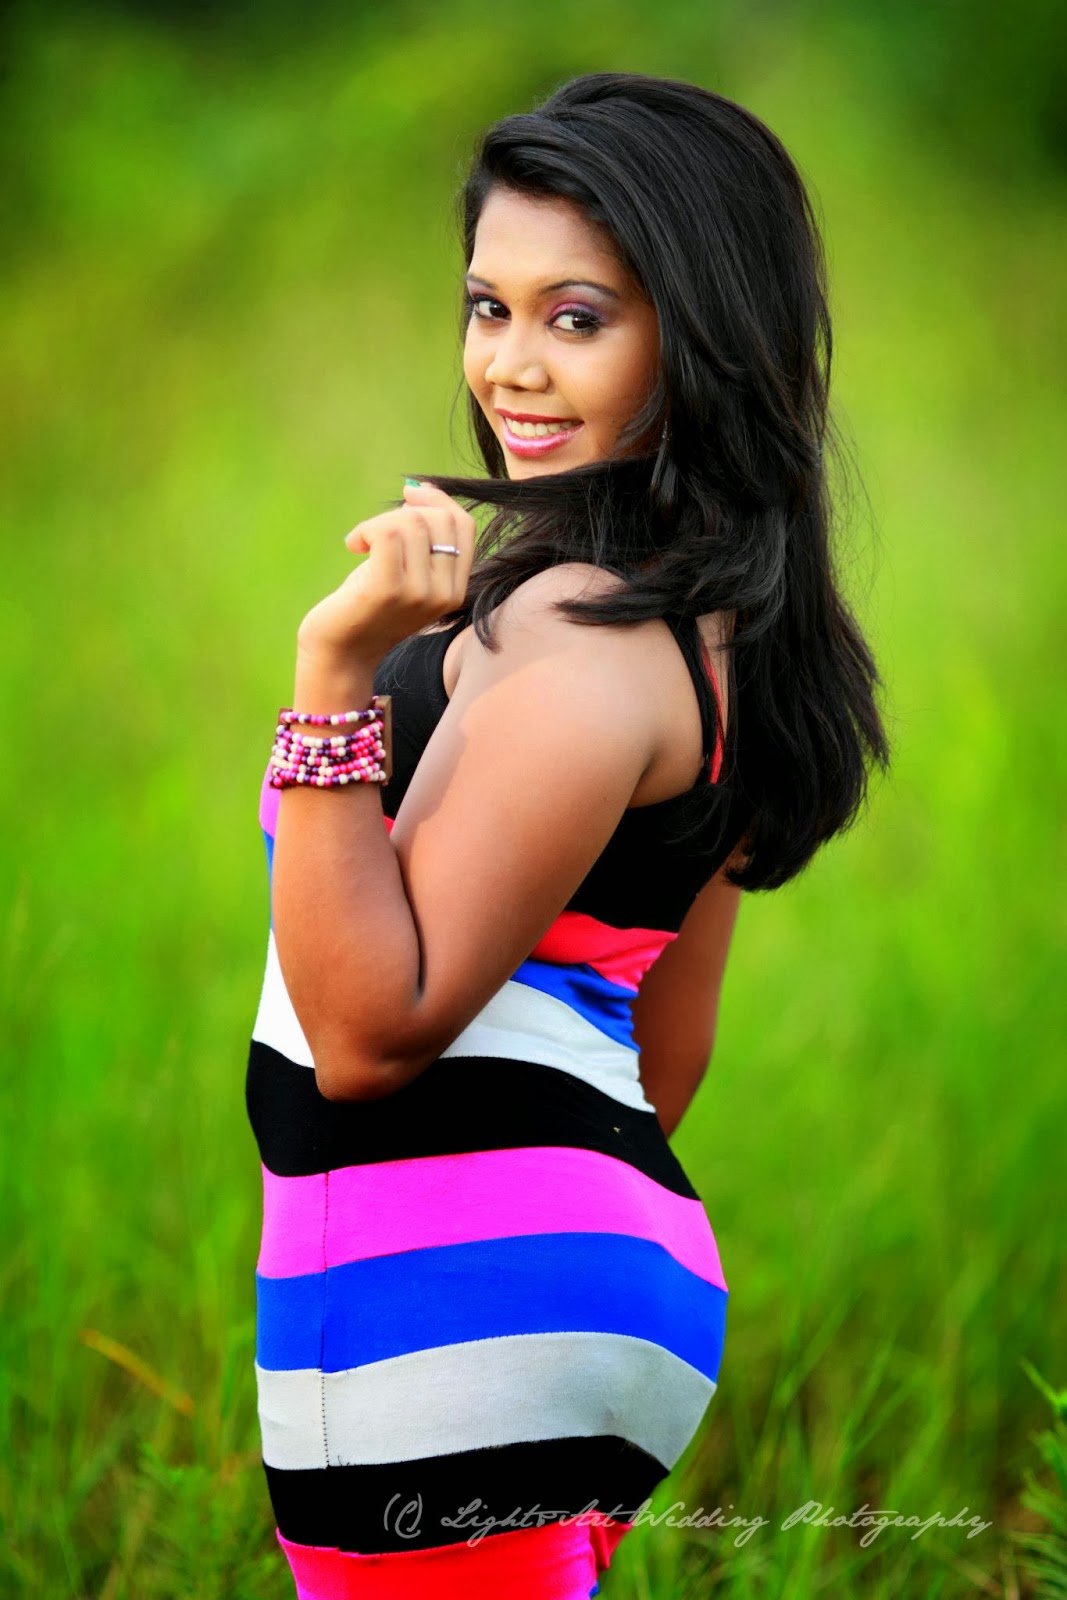 Lankan Hot Actress Model Tv presenter Singer Pics photos stills gallery